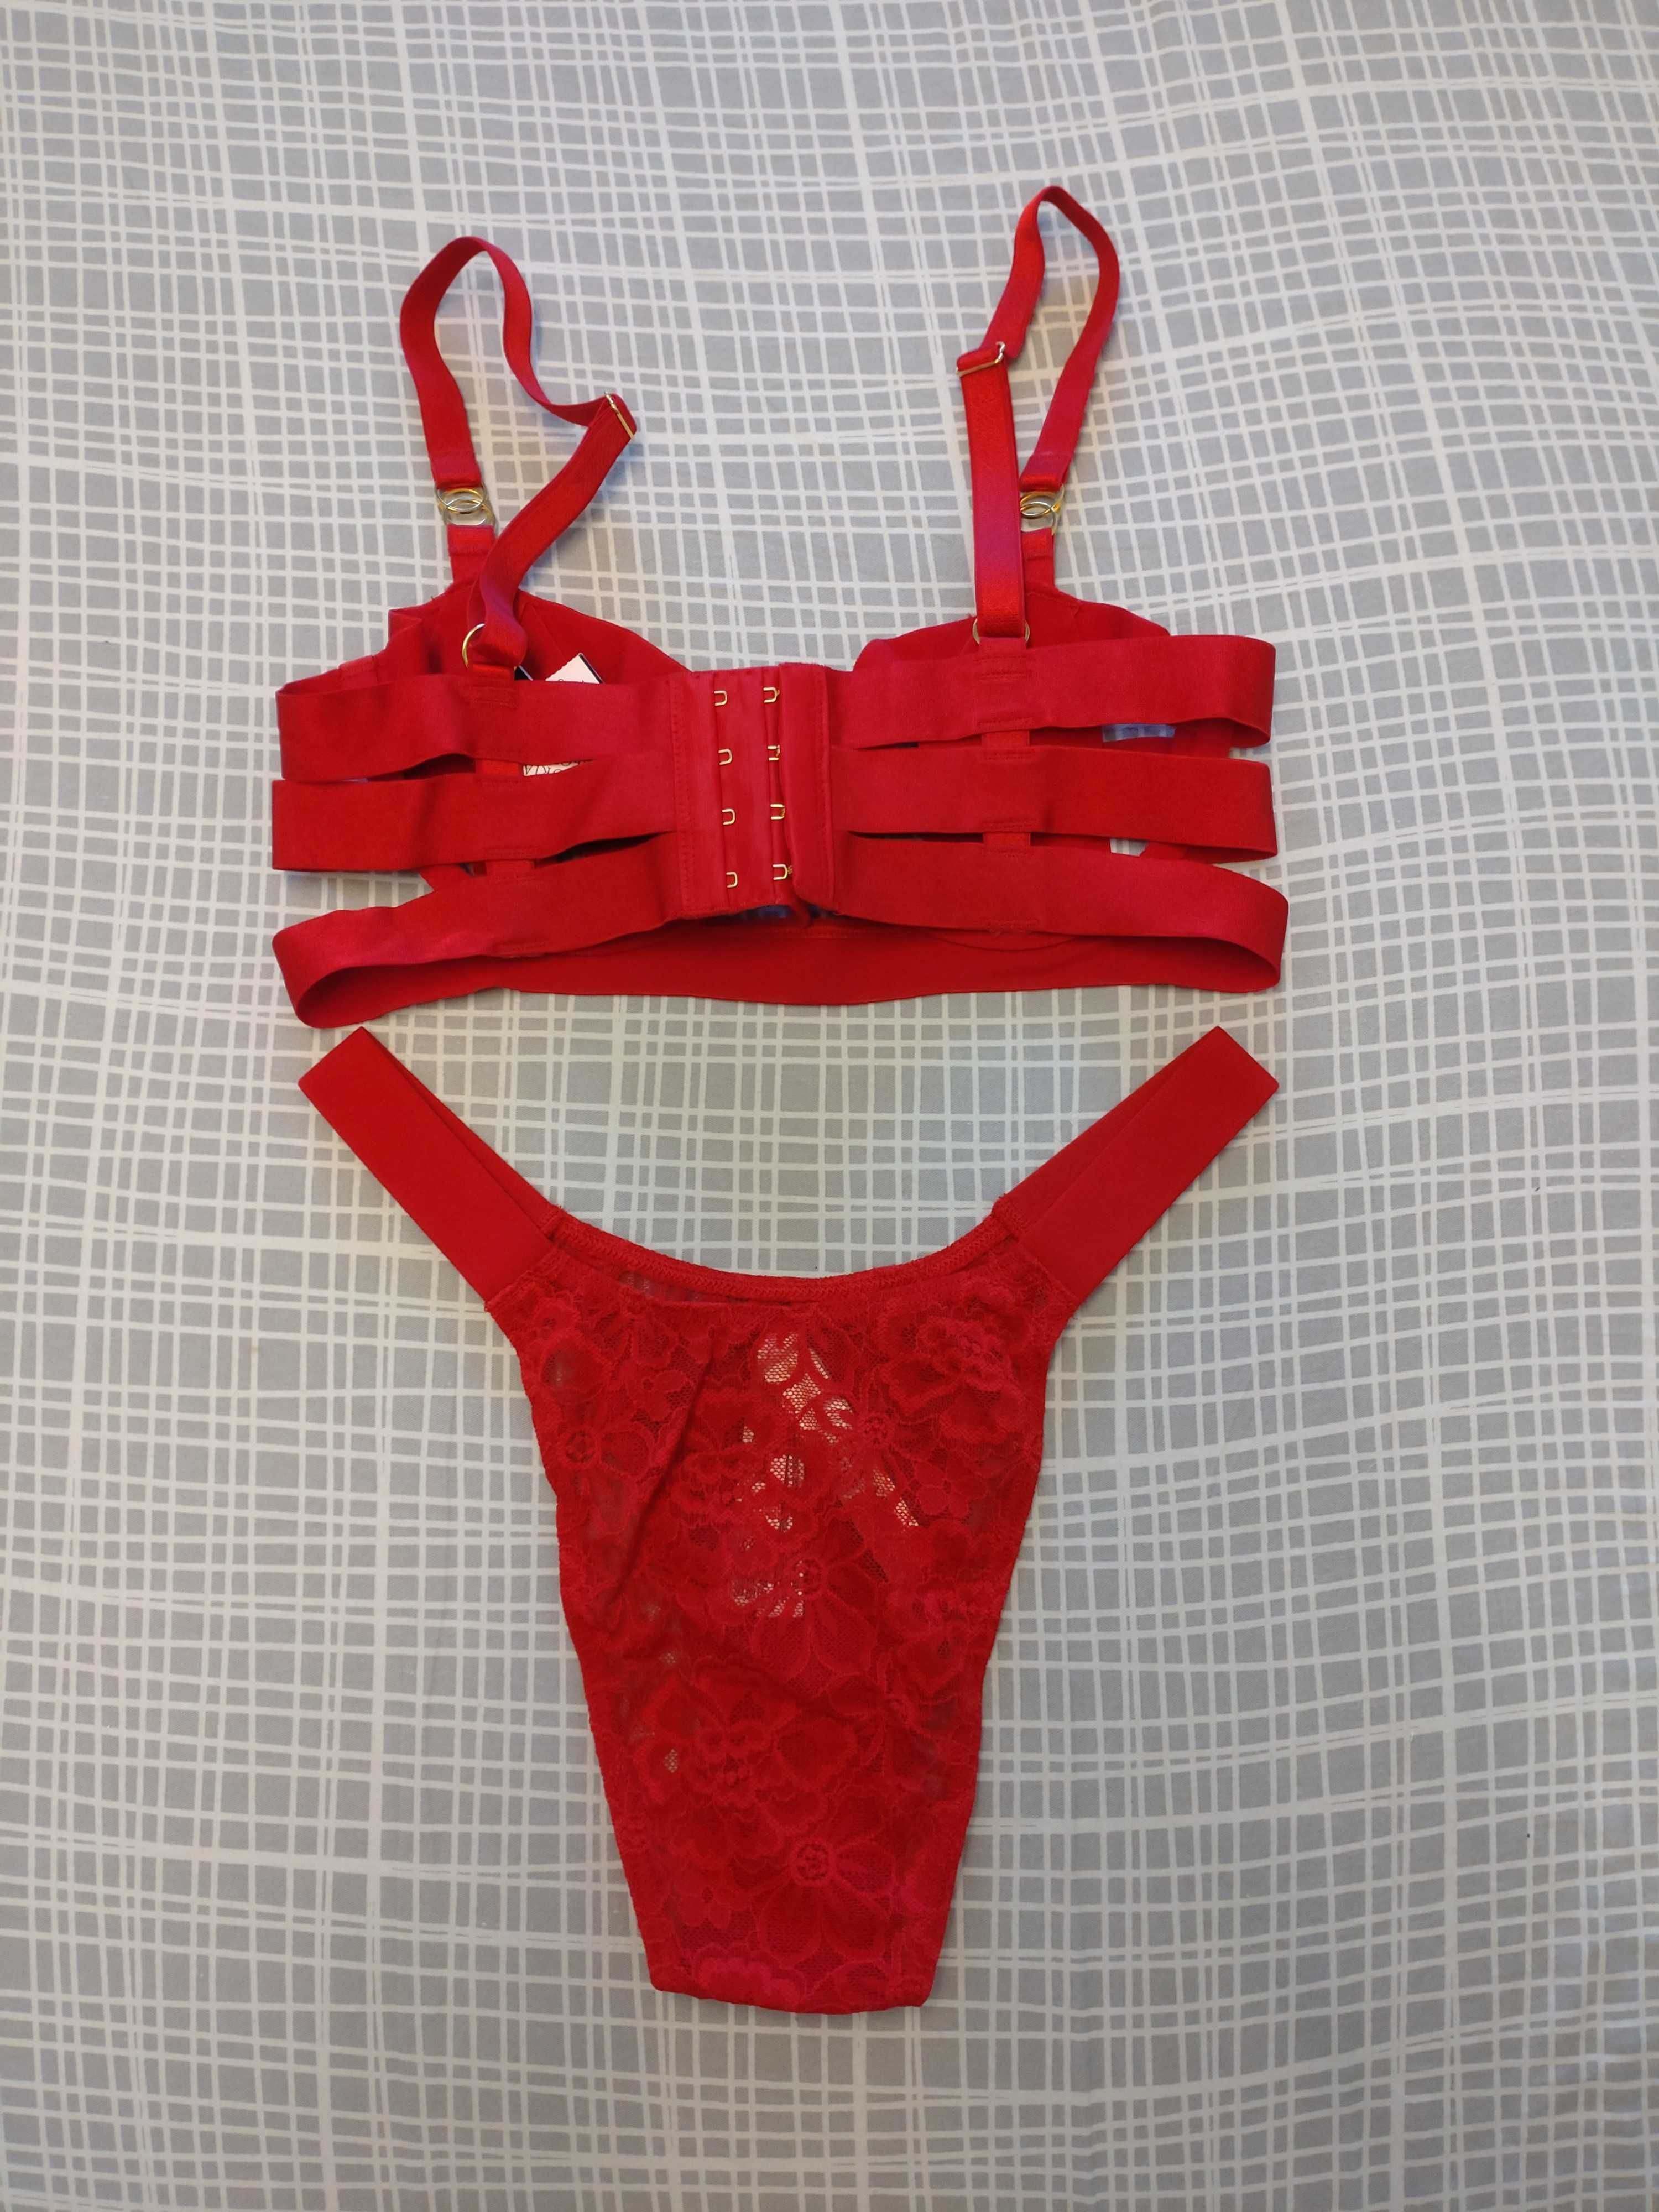 Komplet Victoria's Secret 32B biustonosz S brazyliany czerwone